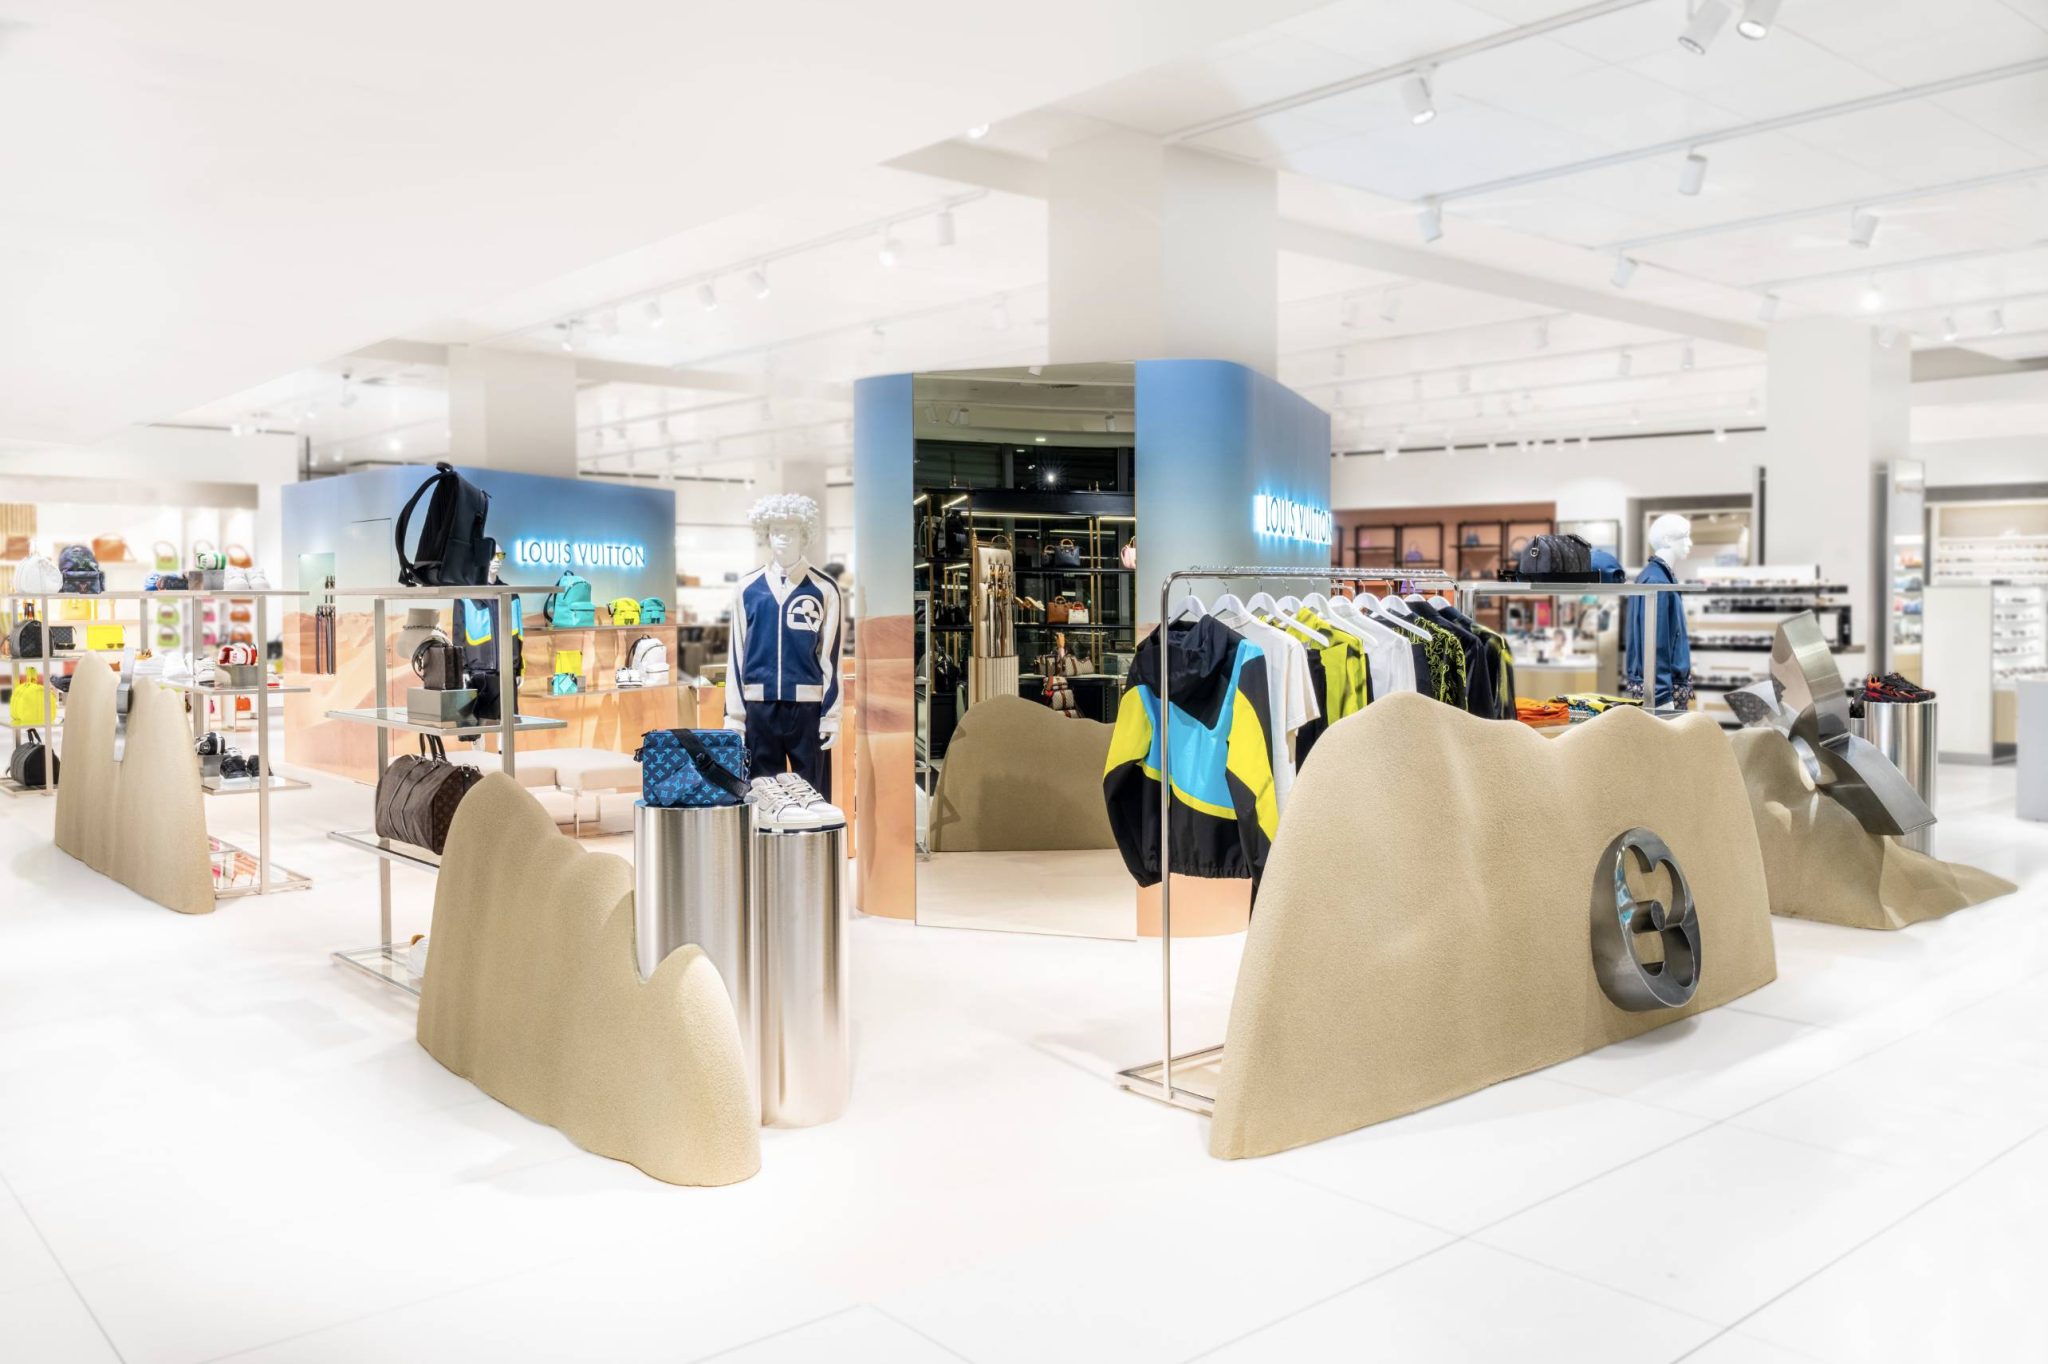 Maastricht: Louis Vuitton pop-up store